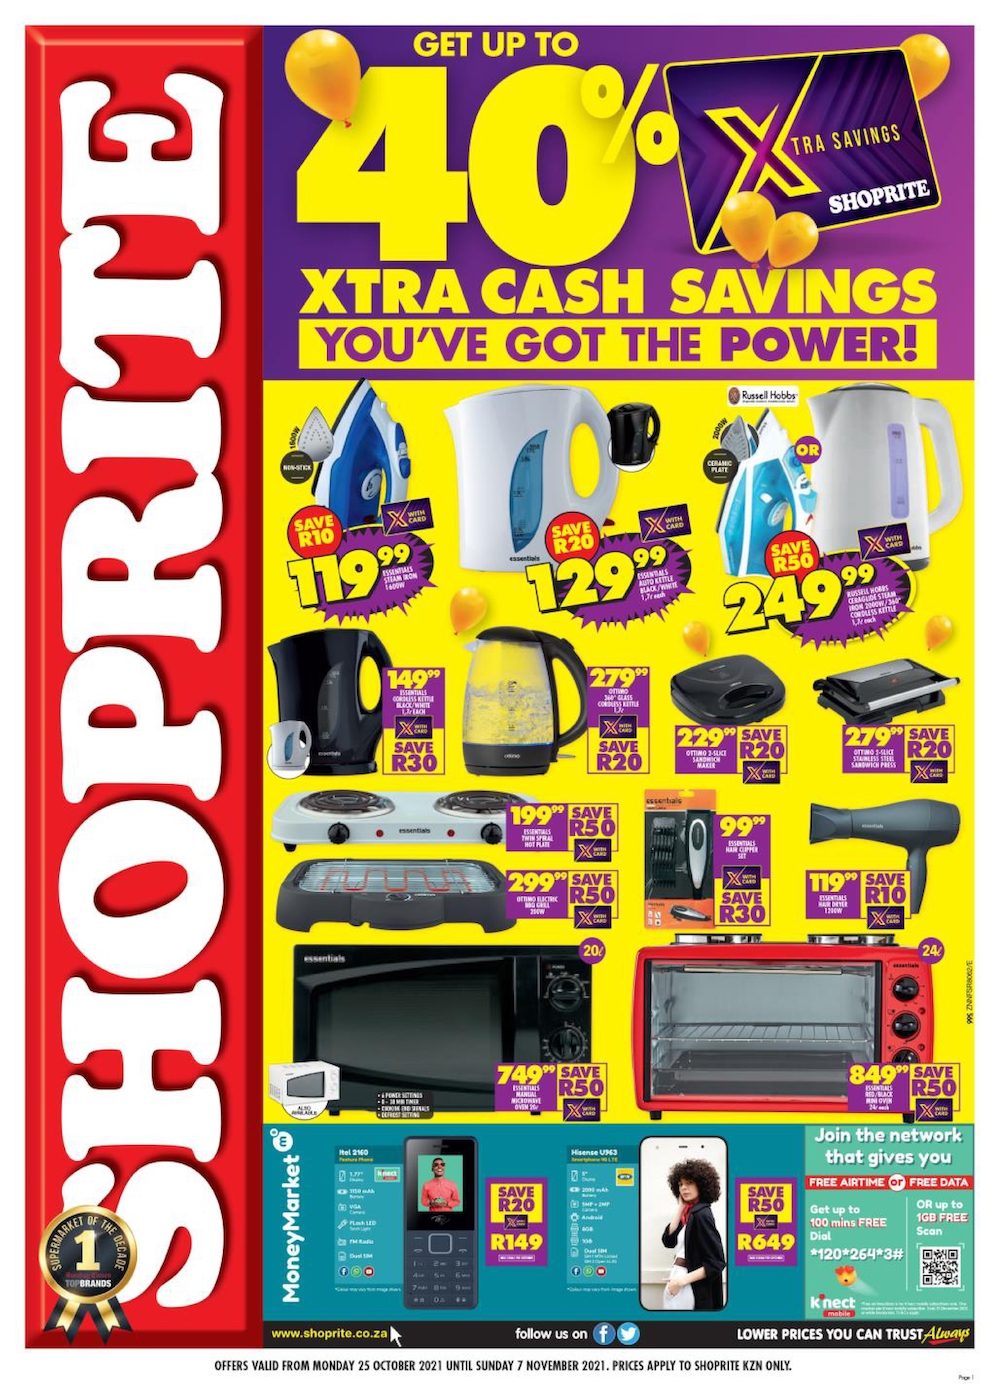 Shoprite Specials Xtra Savings 25 Oct – 7 Nov 2021